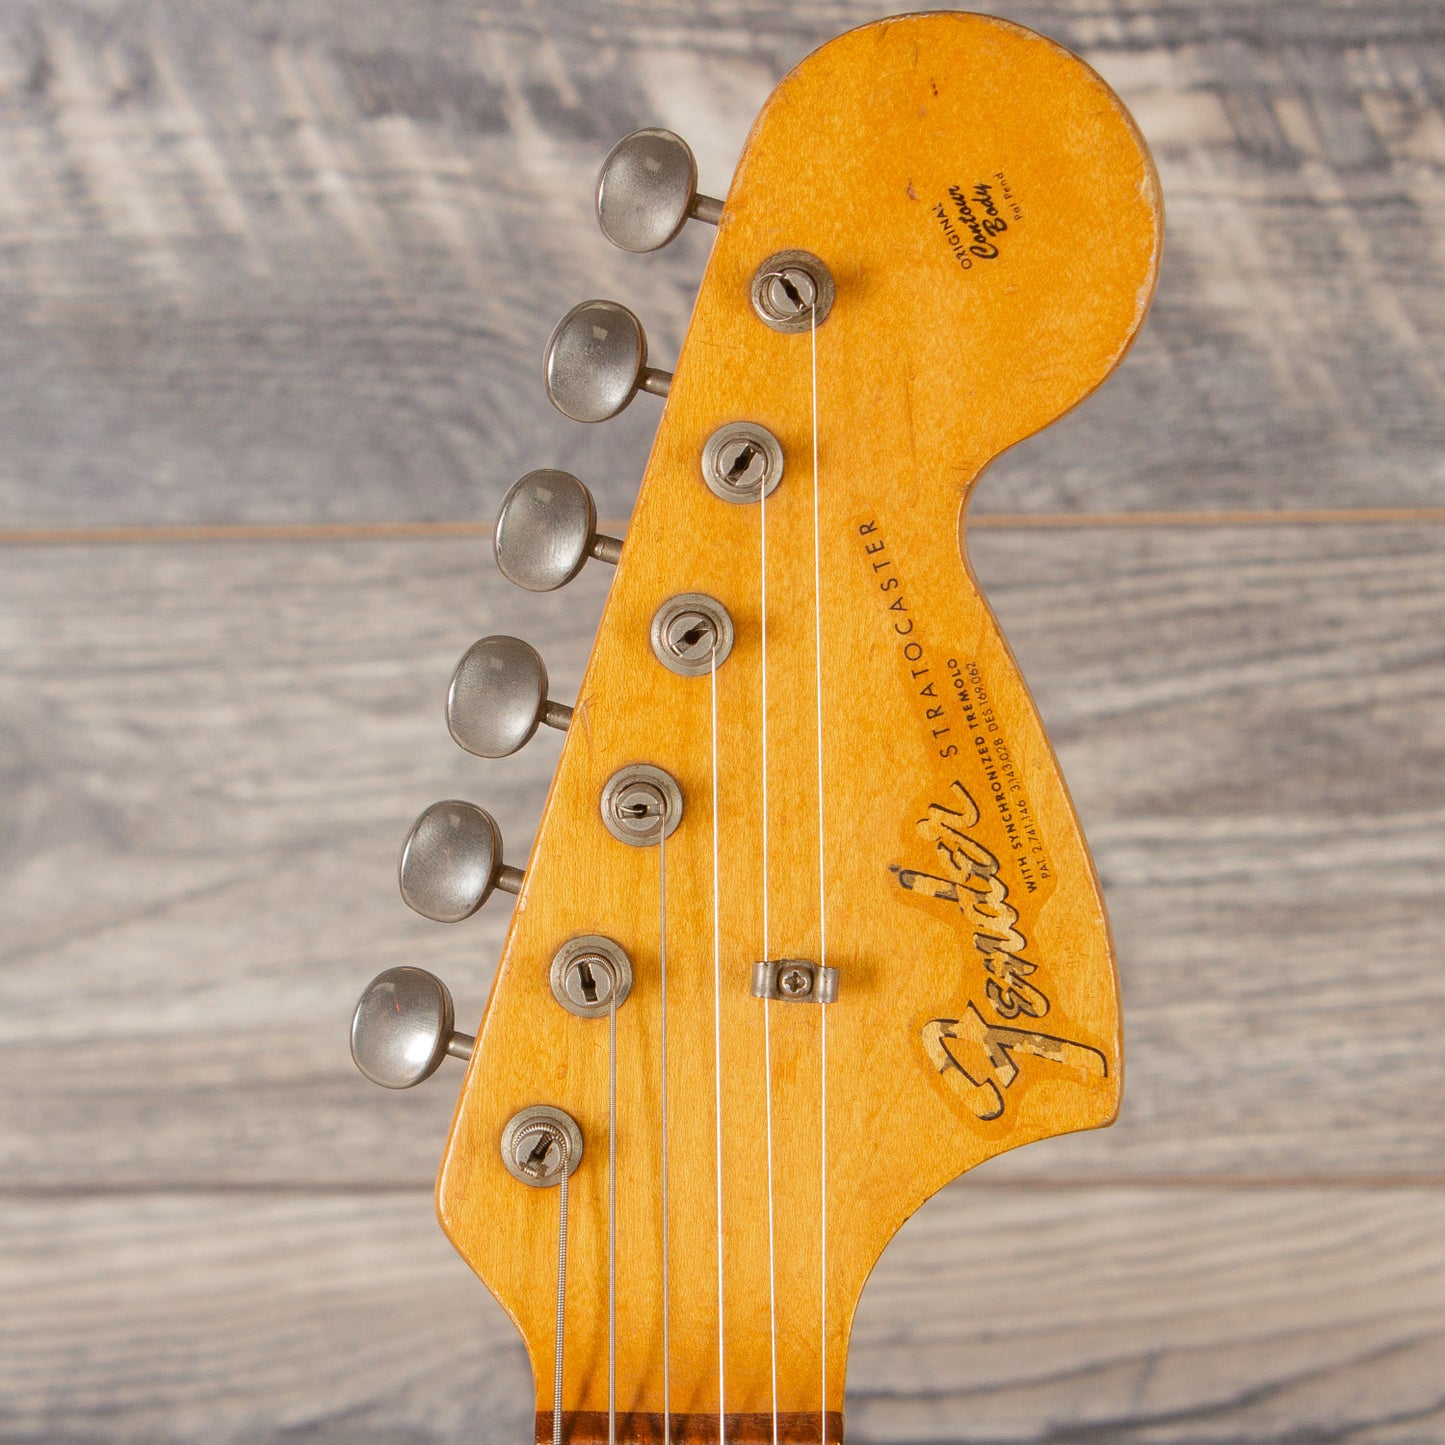 1966 Fender Stratocaster - Olympic White